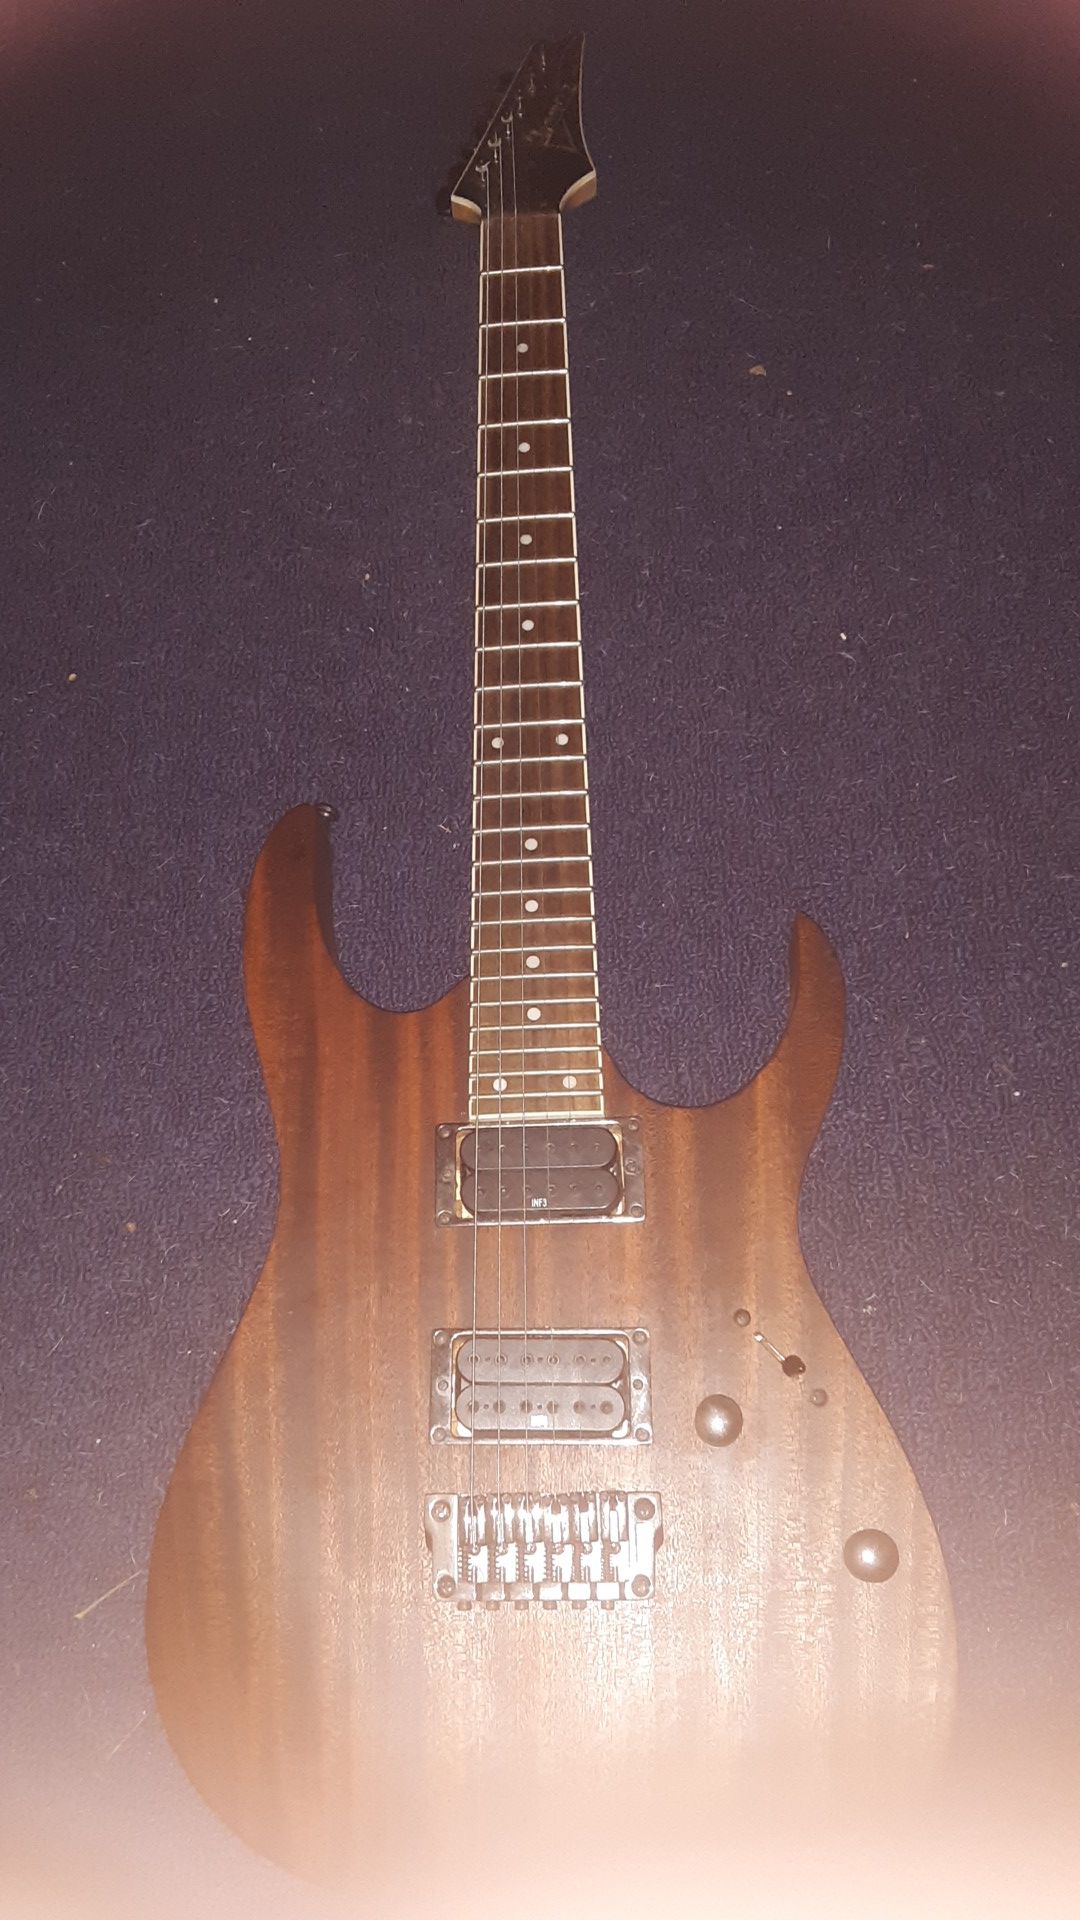 Ibanez RG Series guitar